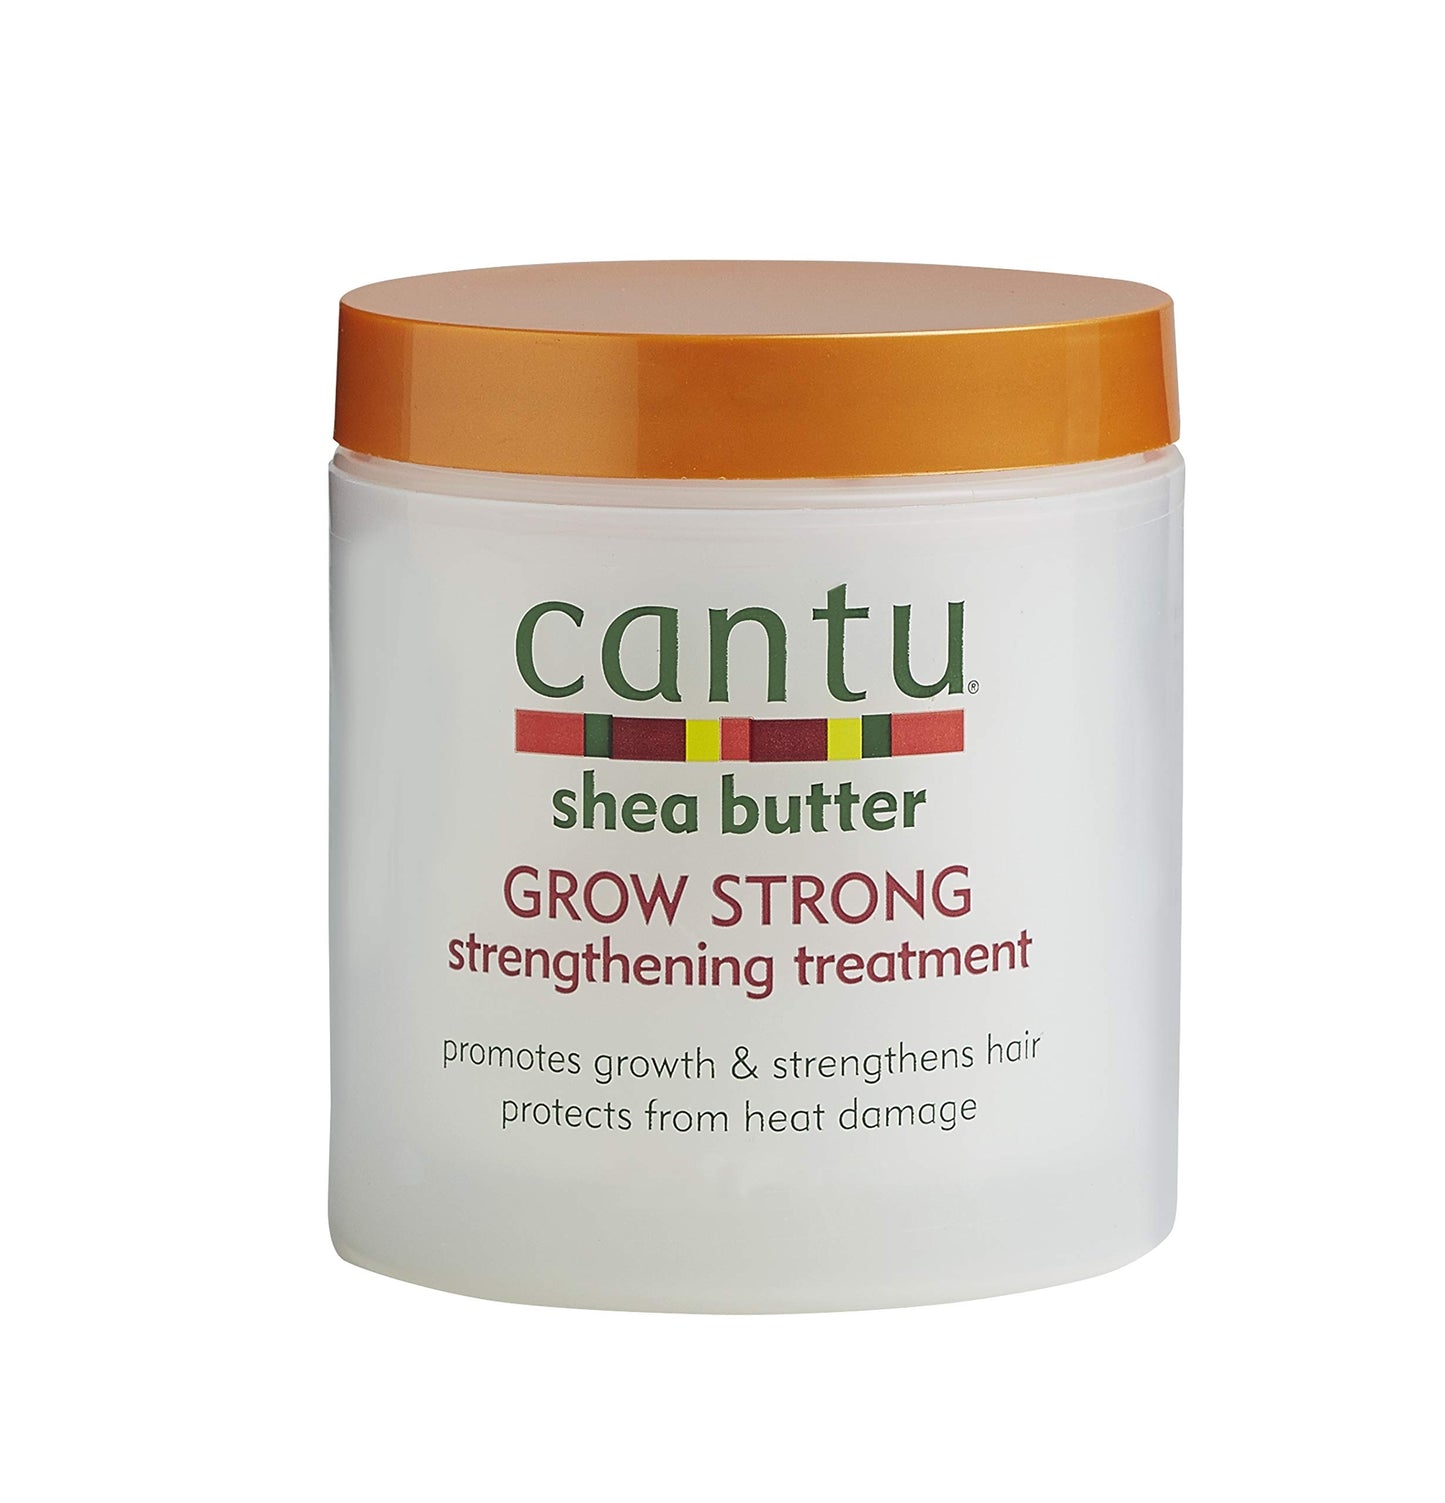 Cantu Shea butter grow strong 6fl oz